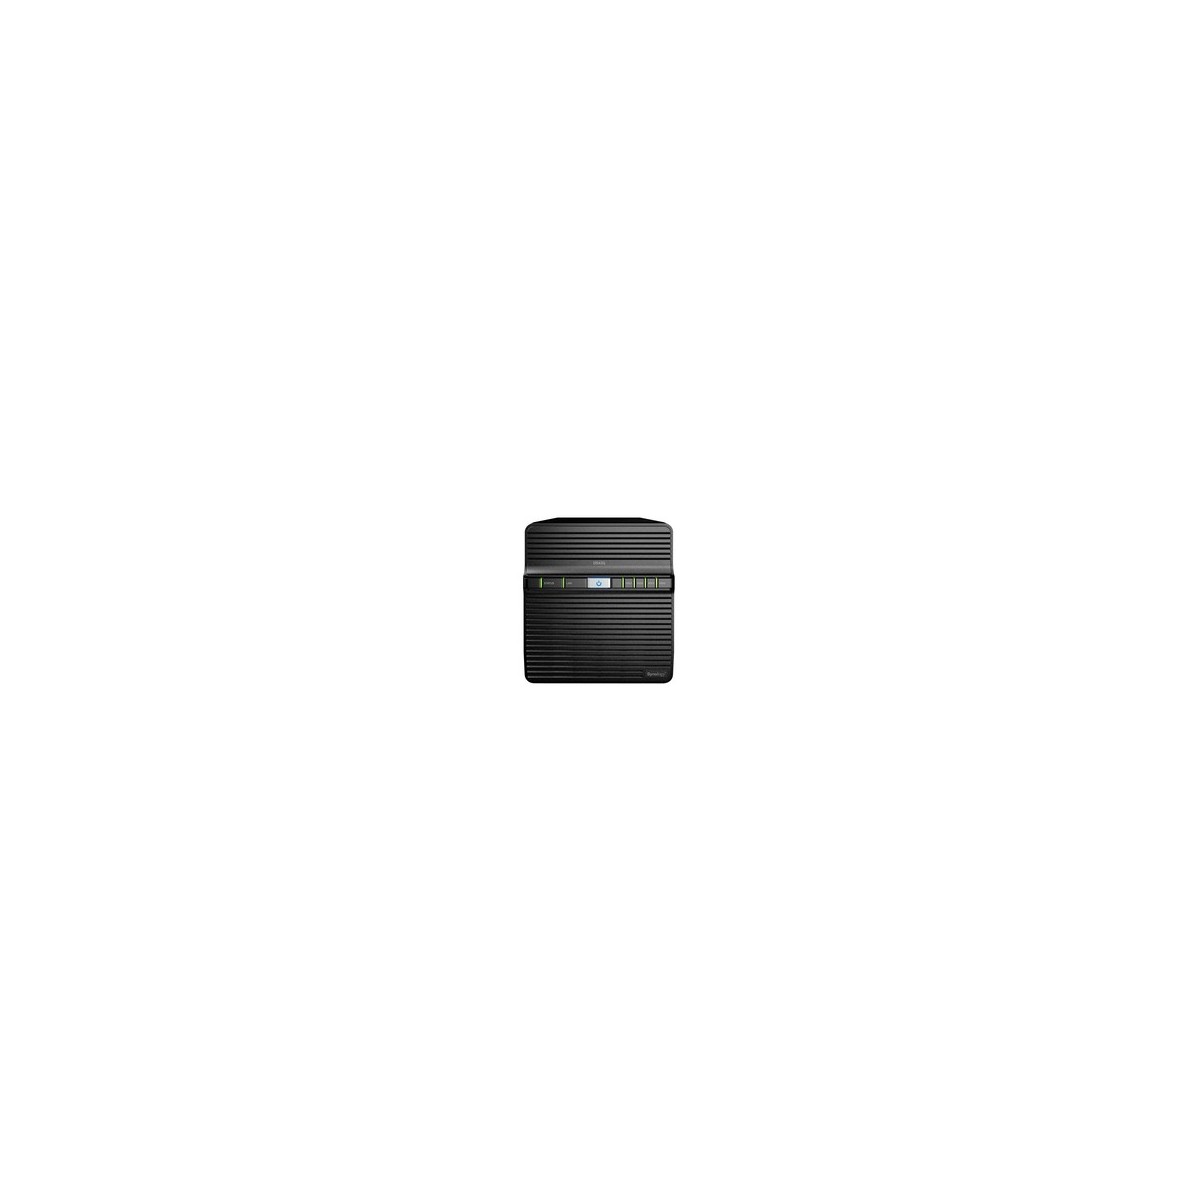 Synology DiskStation DS420J - NAS - Compact - Realtek - RTD1296 - Black